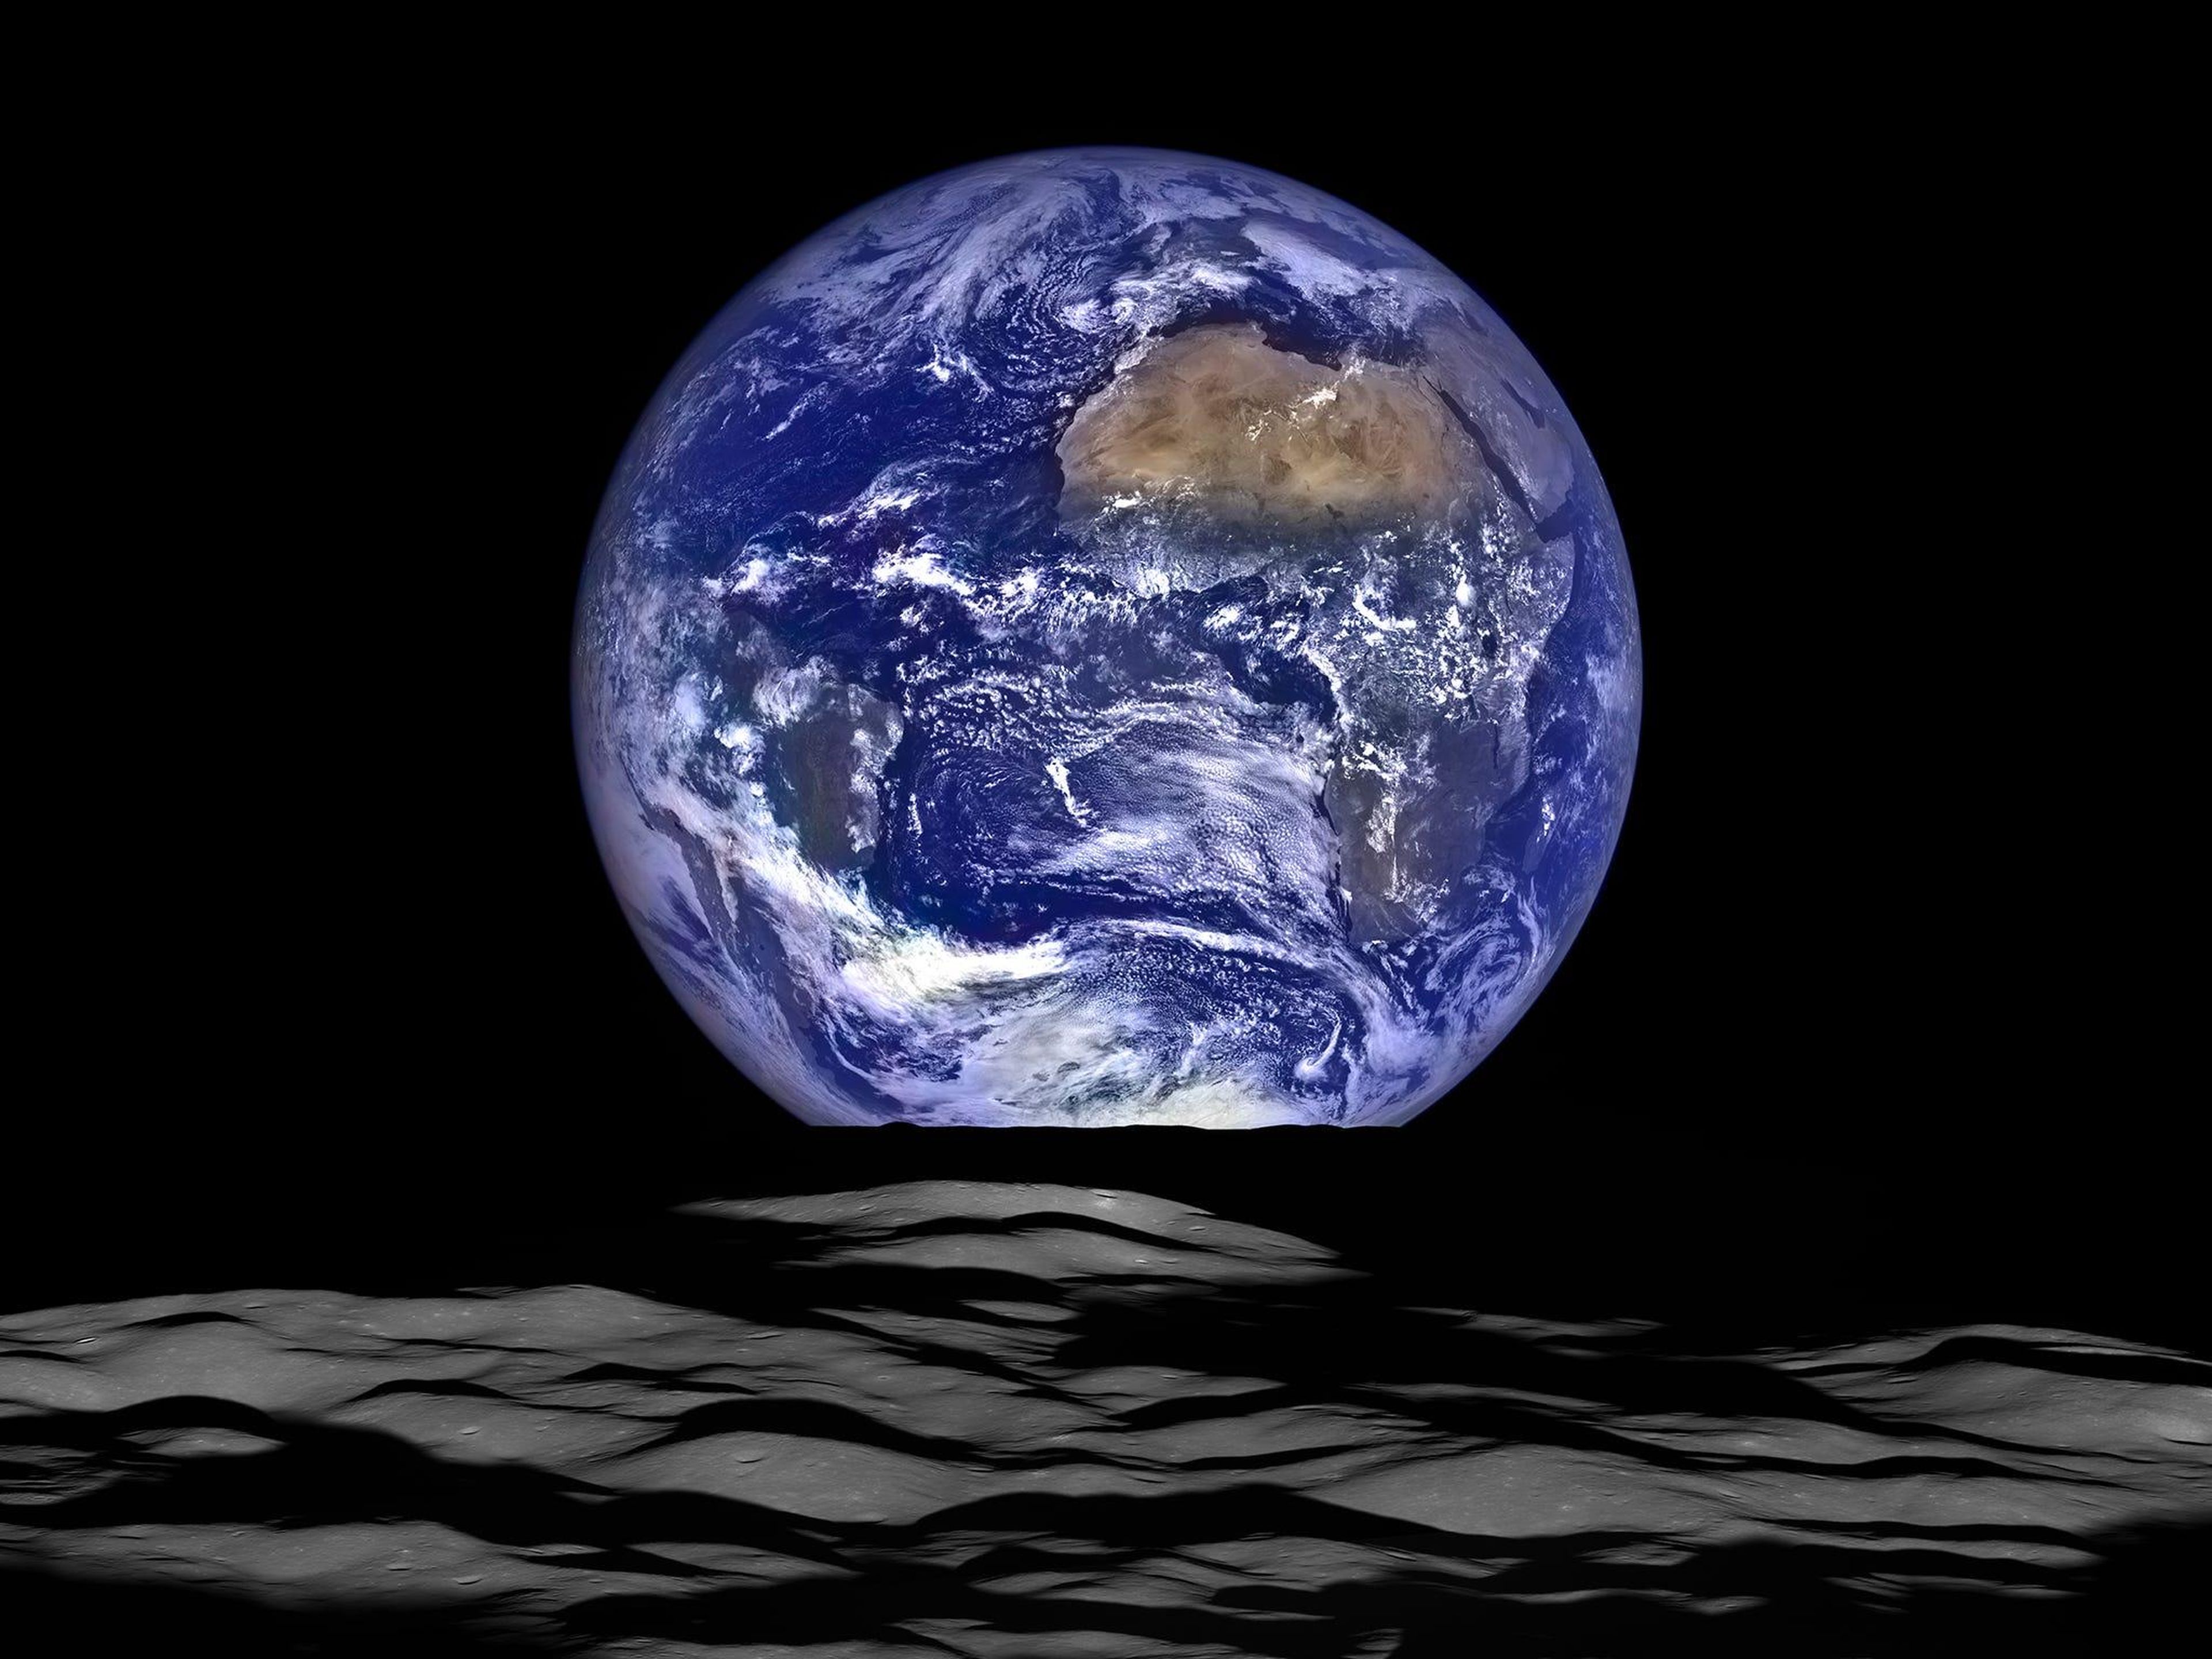 Lunar Reconnaissance Orbiter de la NASA capturó esta imagen de la Tierra desde el punto de vista de la nave espacial en órbita alrededor de la Luna.